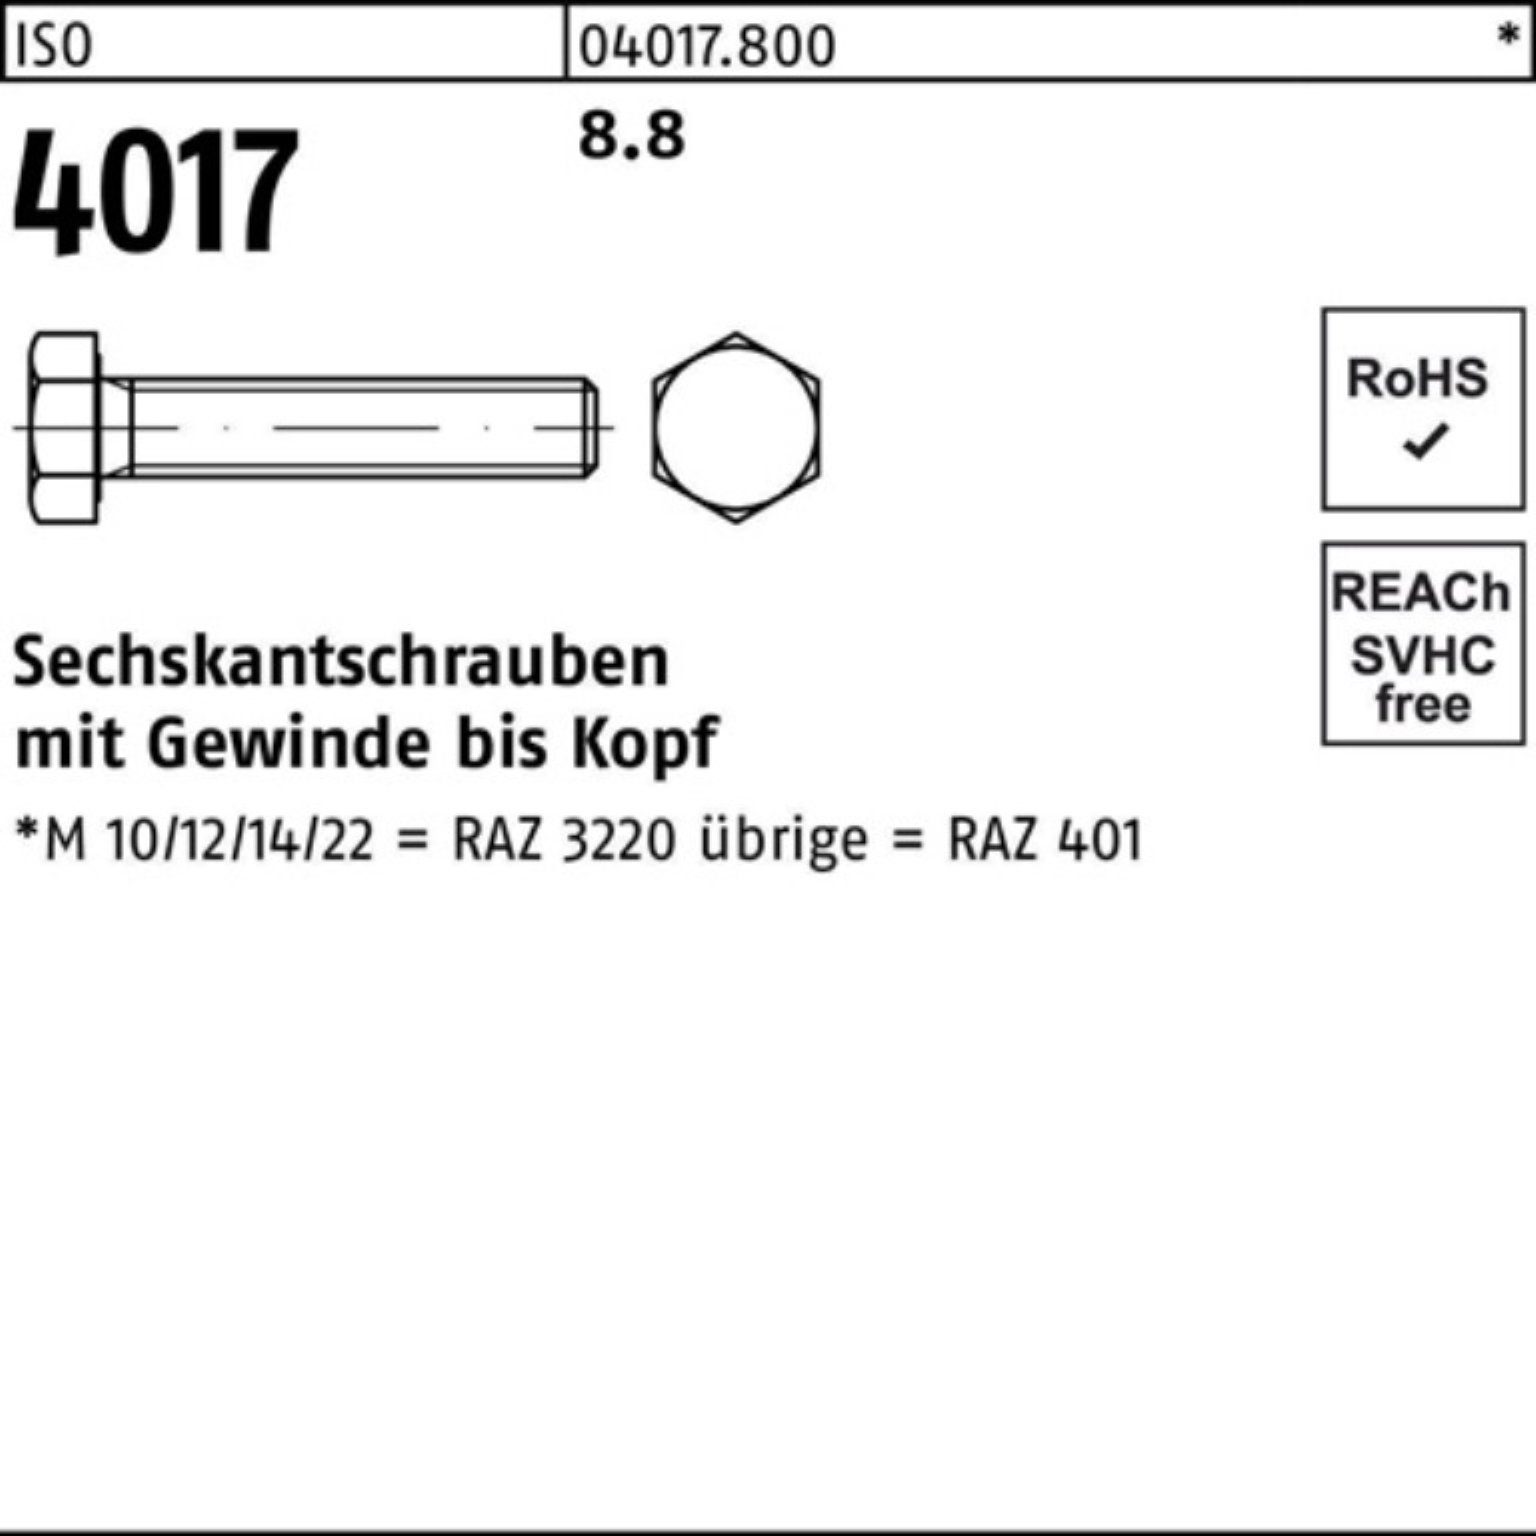 Bufab Sechskantschraube Pack 1 M42x 8.8 401 4017 Stück 100er Sechskantschraube 120 ISO ISO VG